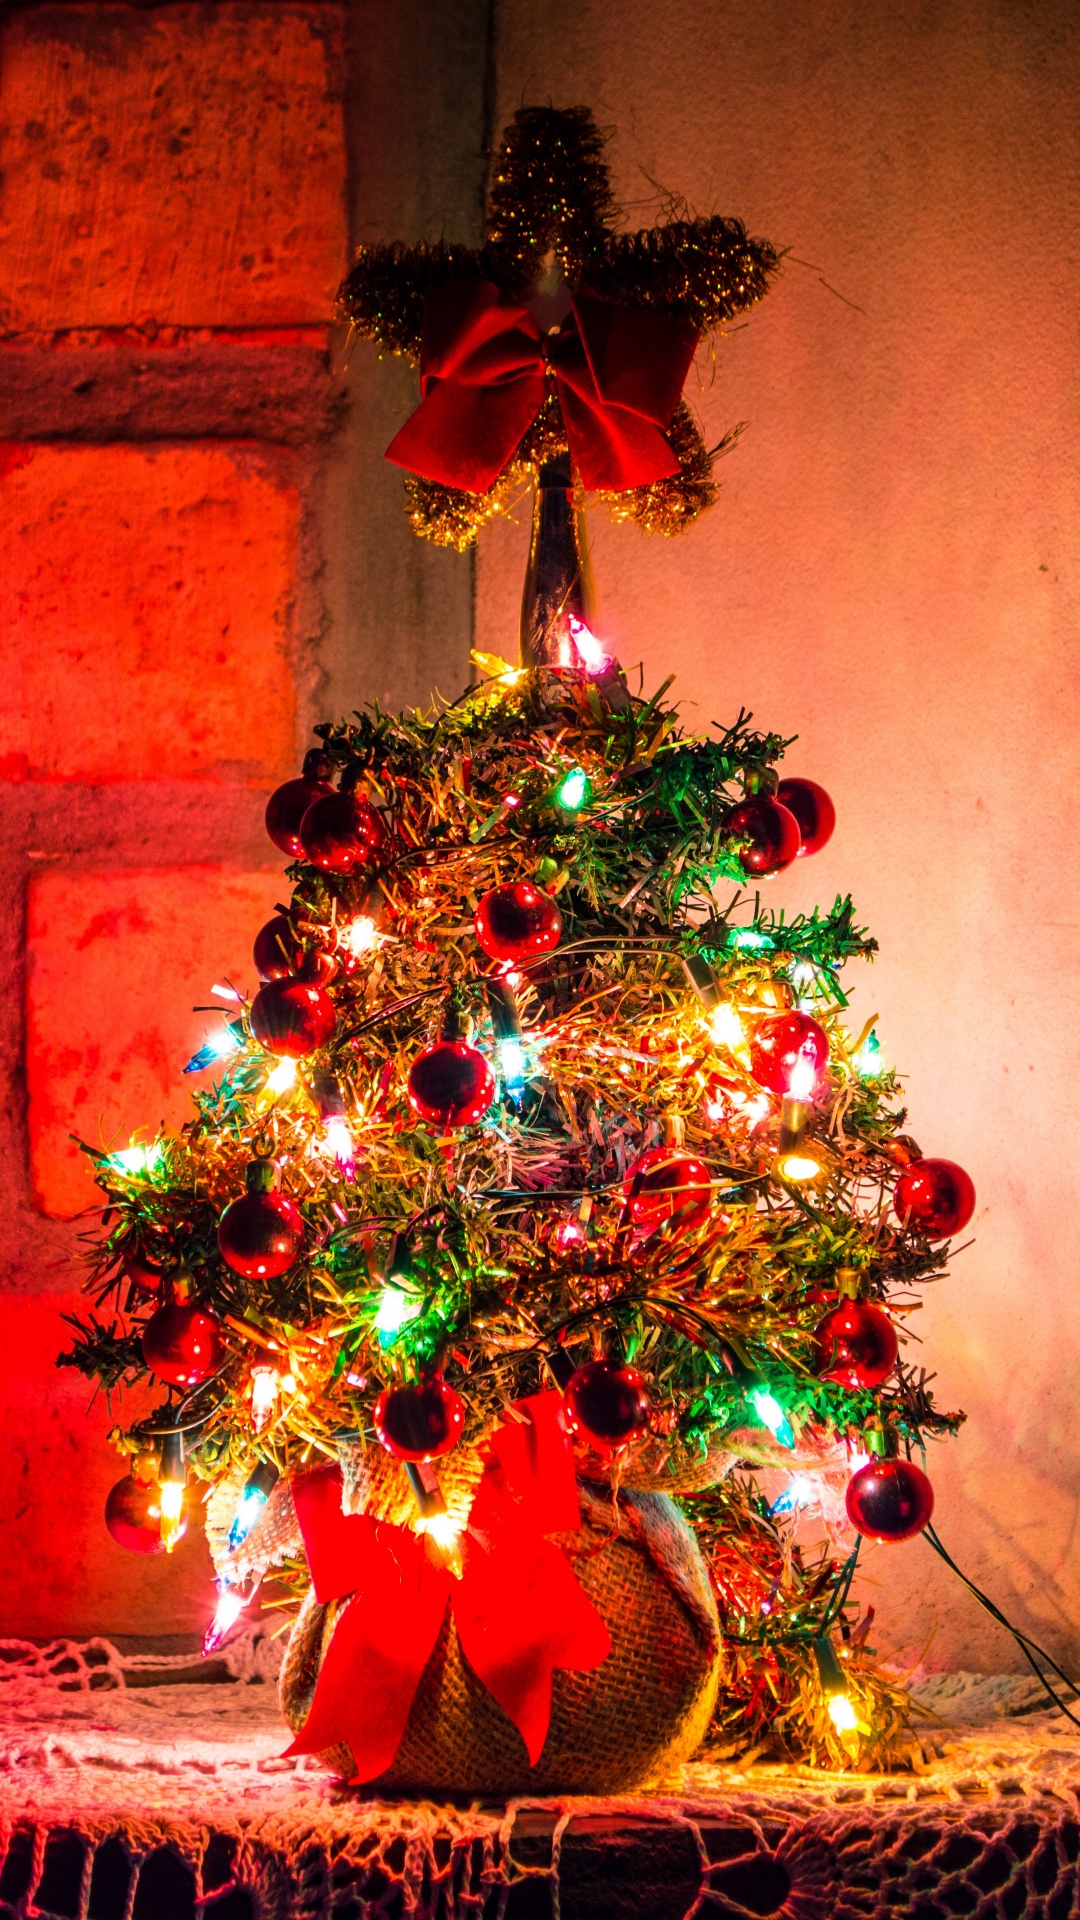 圣诞节那天, 圣诞装饰, 圣诞树, 新的一年, 圣诞节的装饰品 壁纸 1080x1920 允许